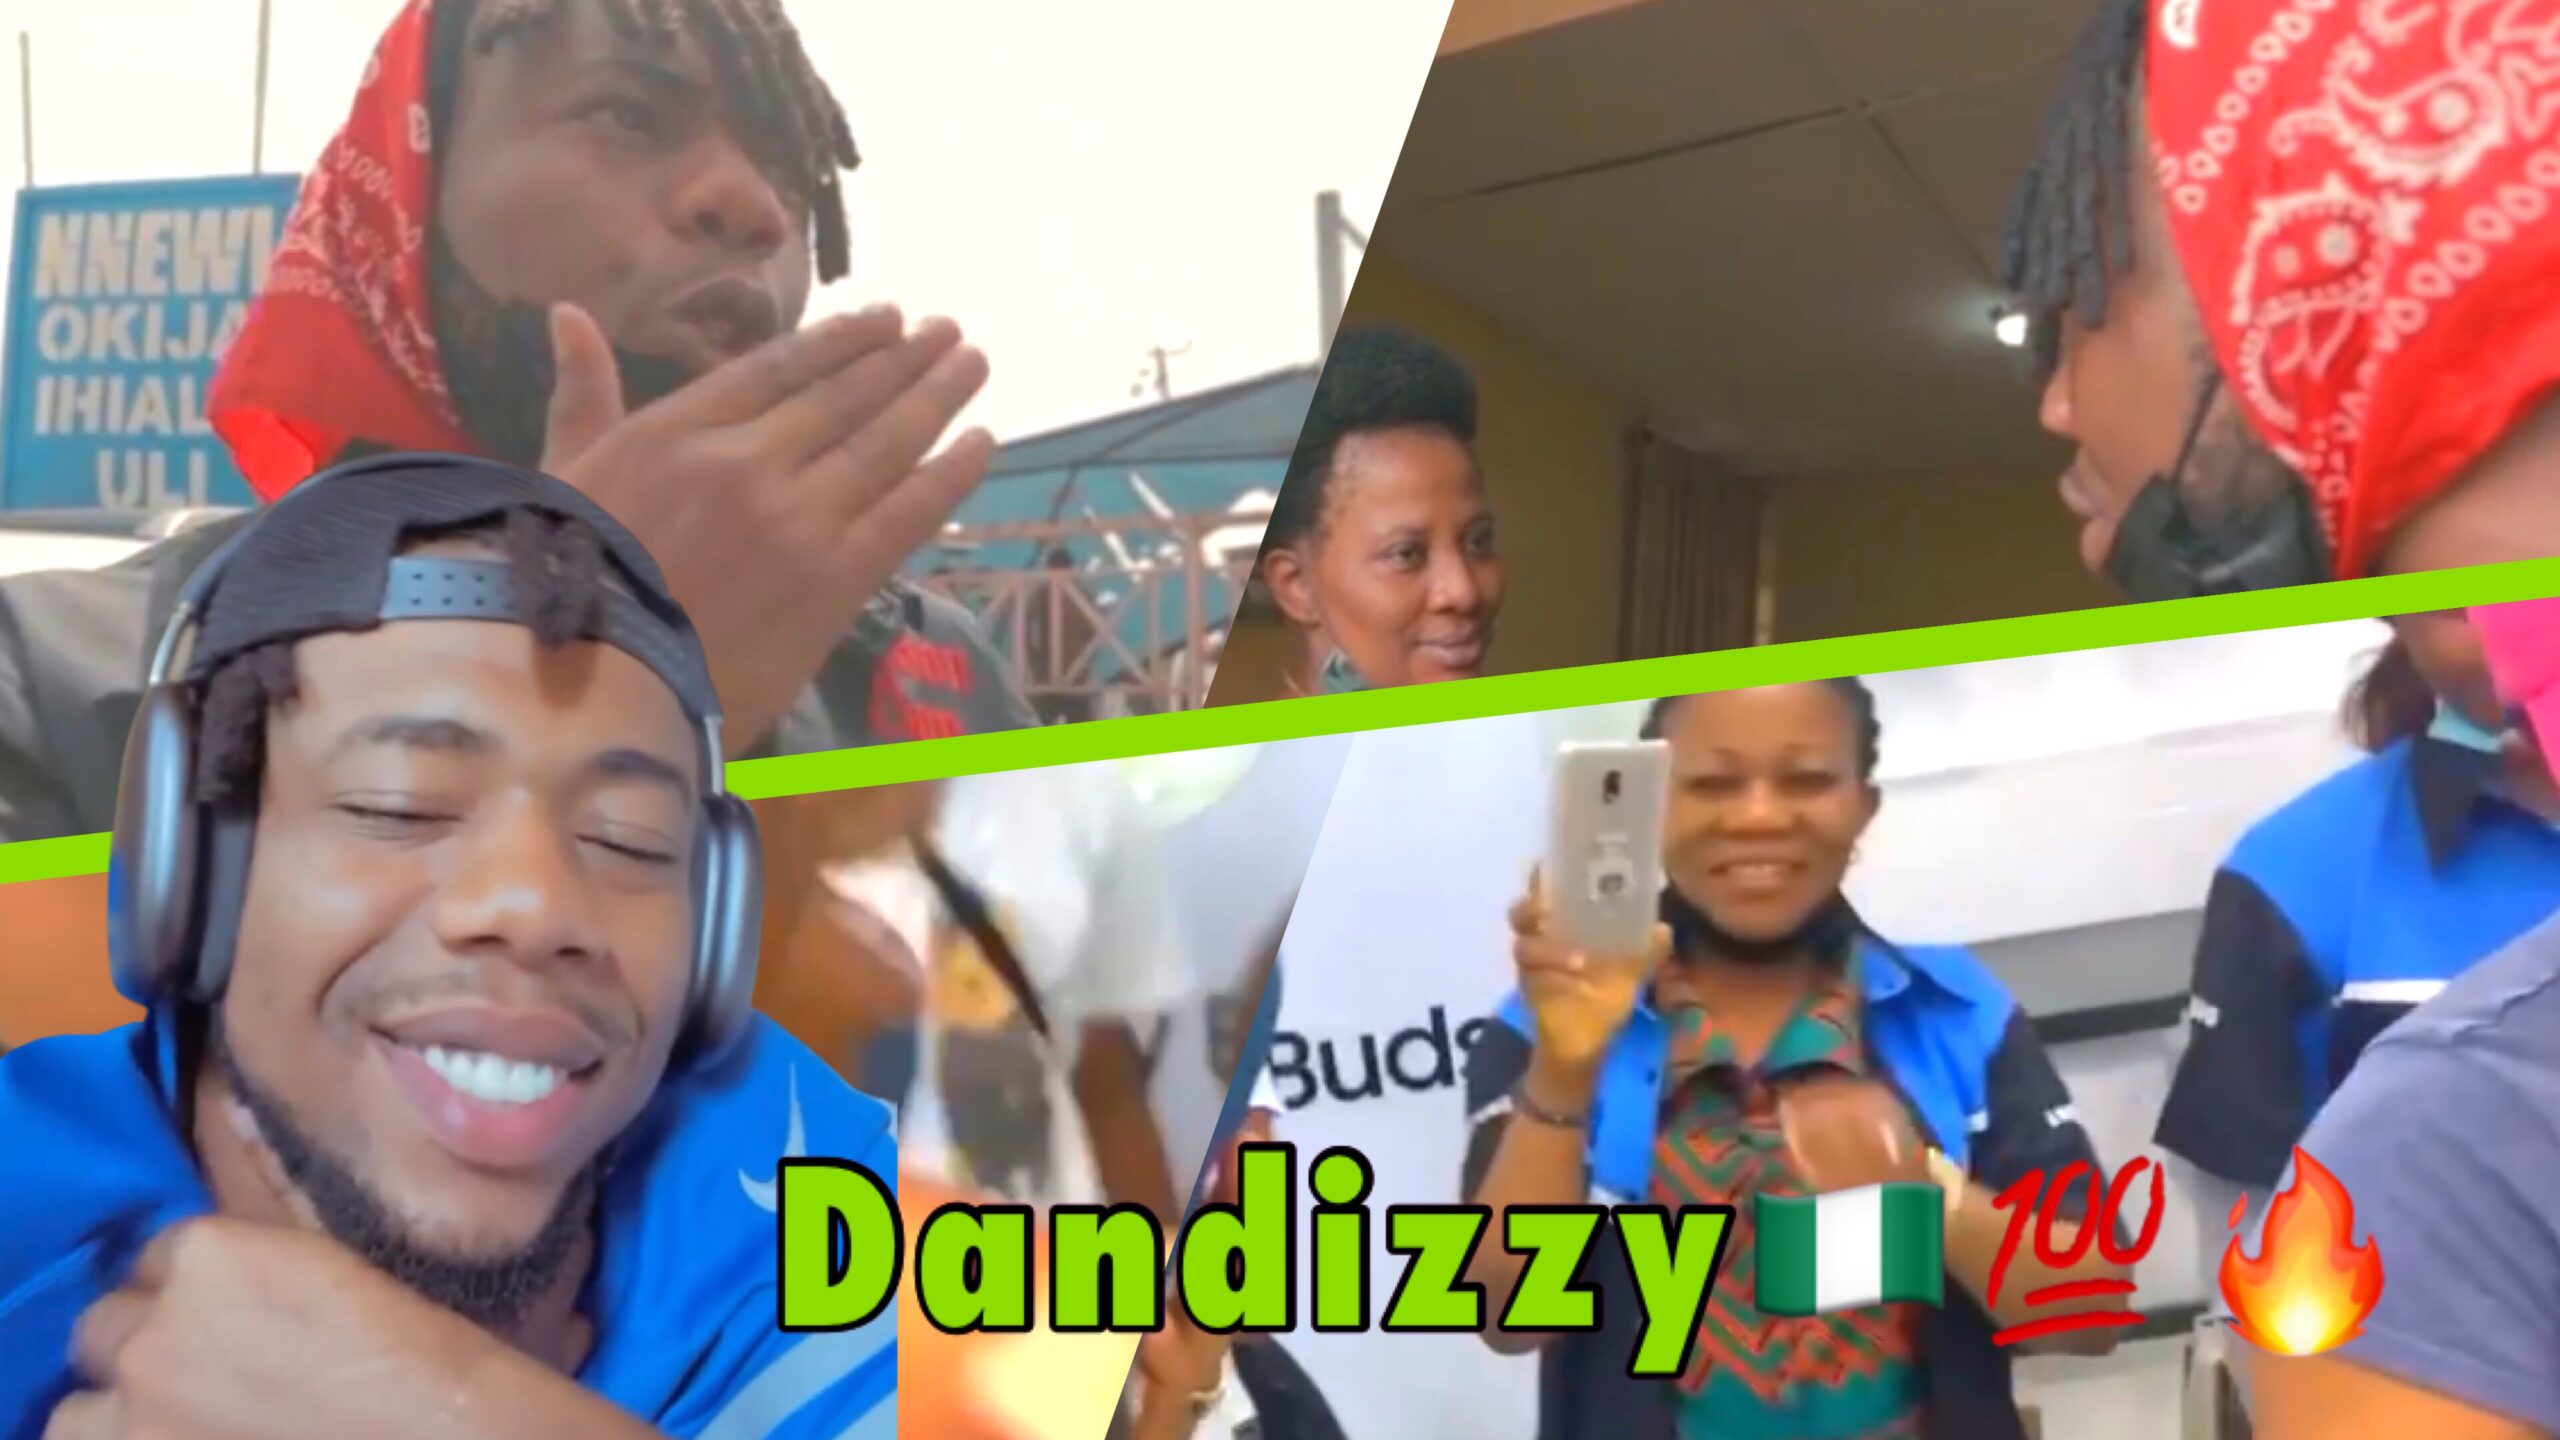 Nigerian freestyle rapper Dandizzy